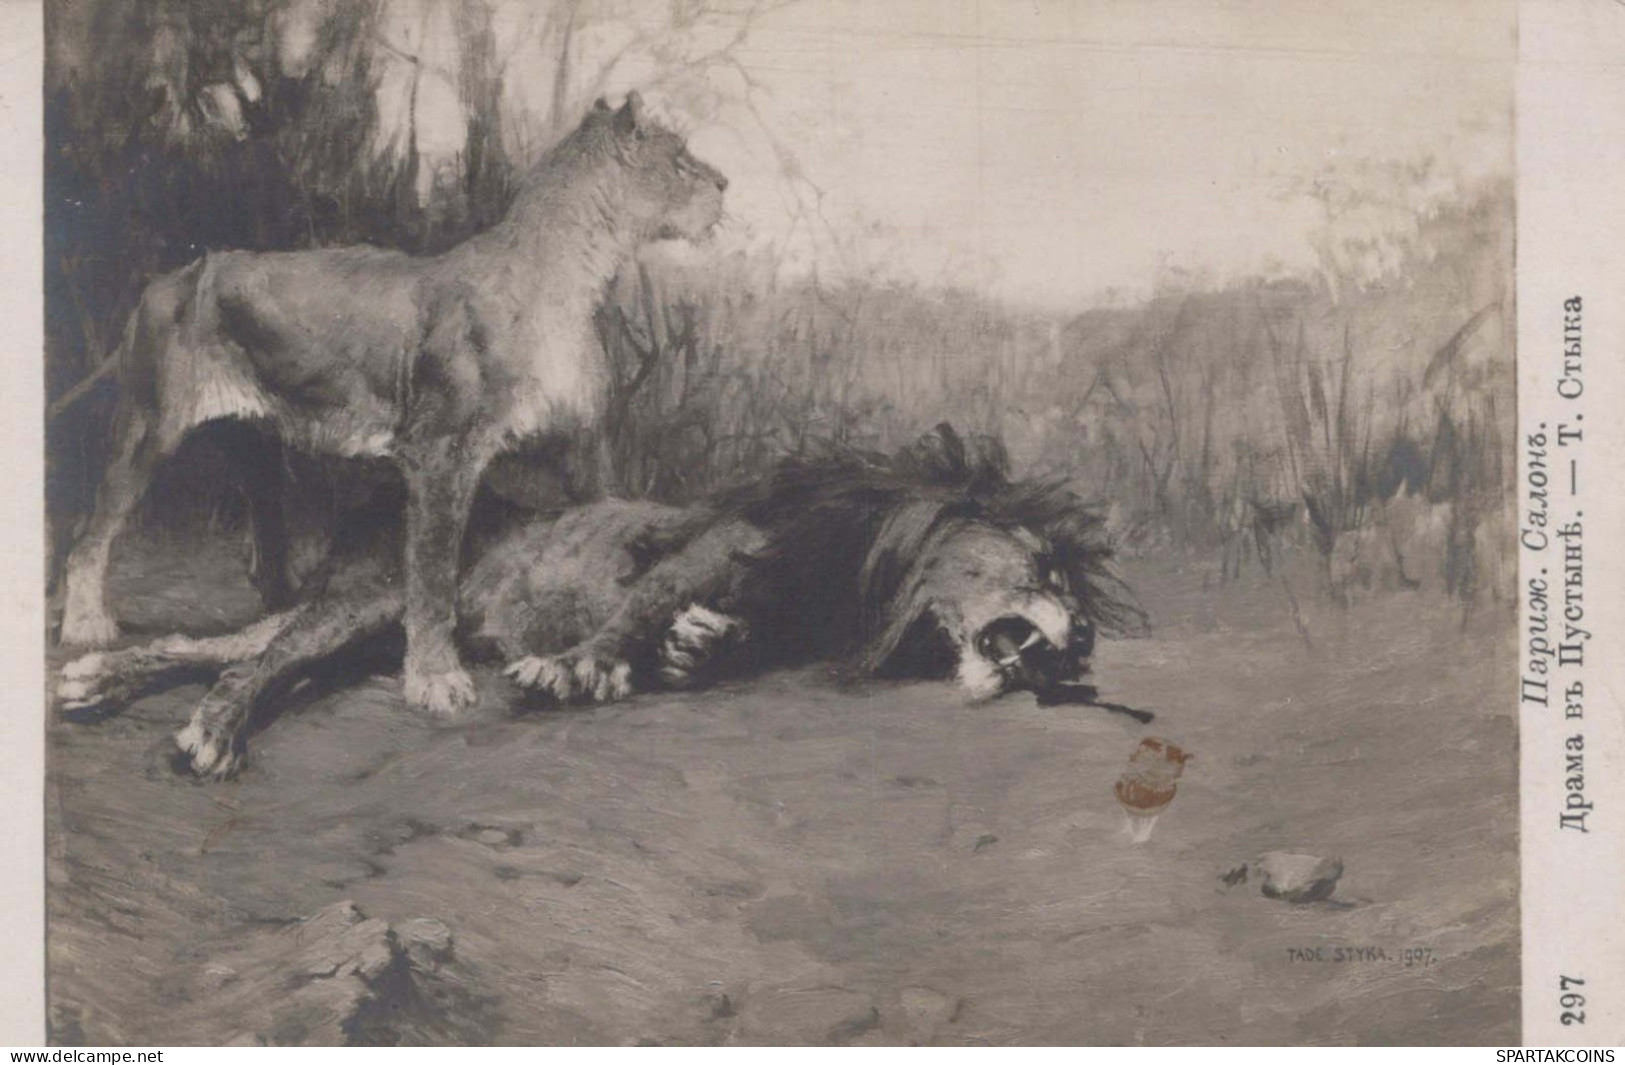 LION Animaux Vintage Carte Postale CPA #PKE774.FR - Lions